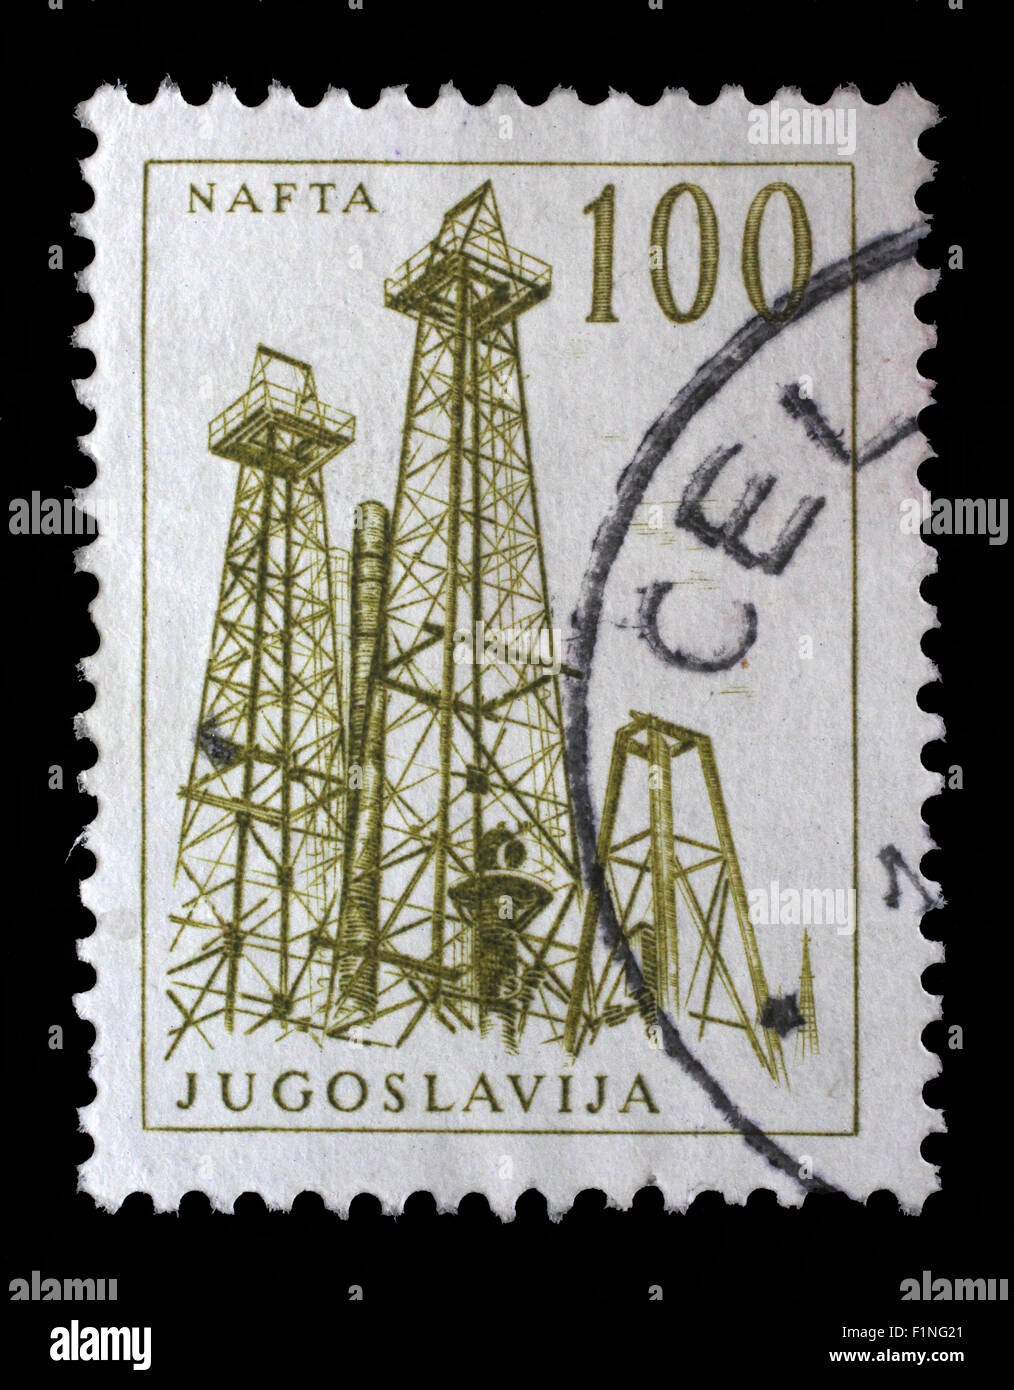 Briefmarke gedruckt in Jugoslawien zeigt eine Öl-Bohrtürme, Nafta, mit der gleichen Inschrift aus Serie "Industriellen Fortschritts" ca. 1958 Stockfoto